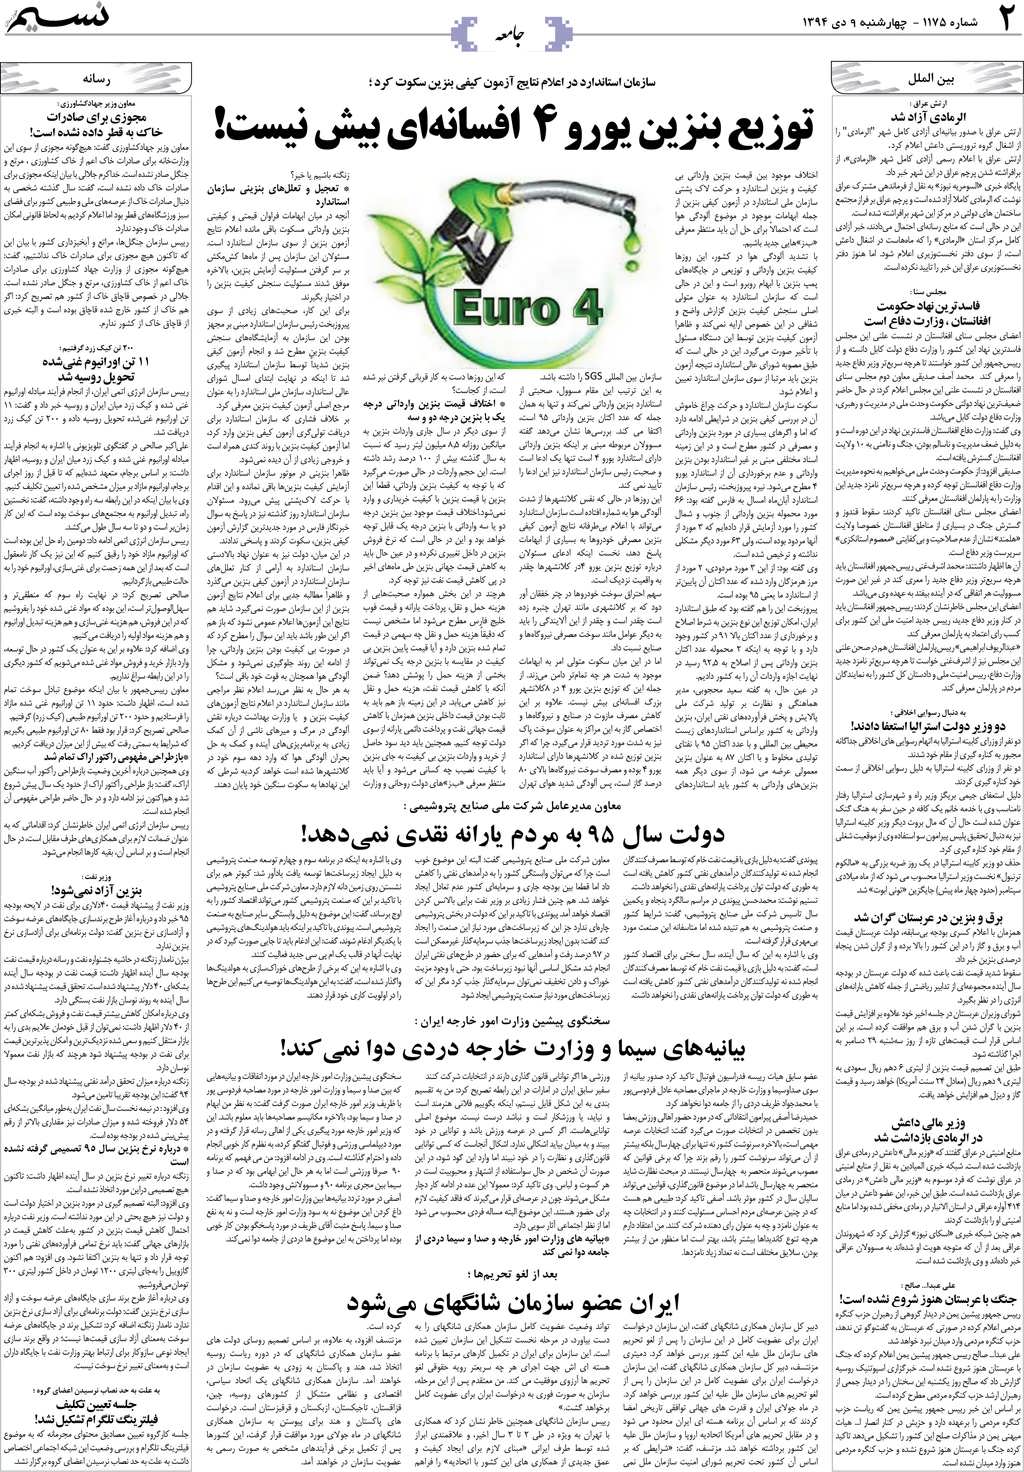 صفحه جامعه روزنامه نسیم شماره 1175